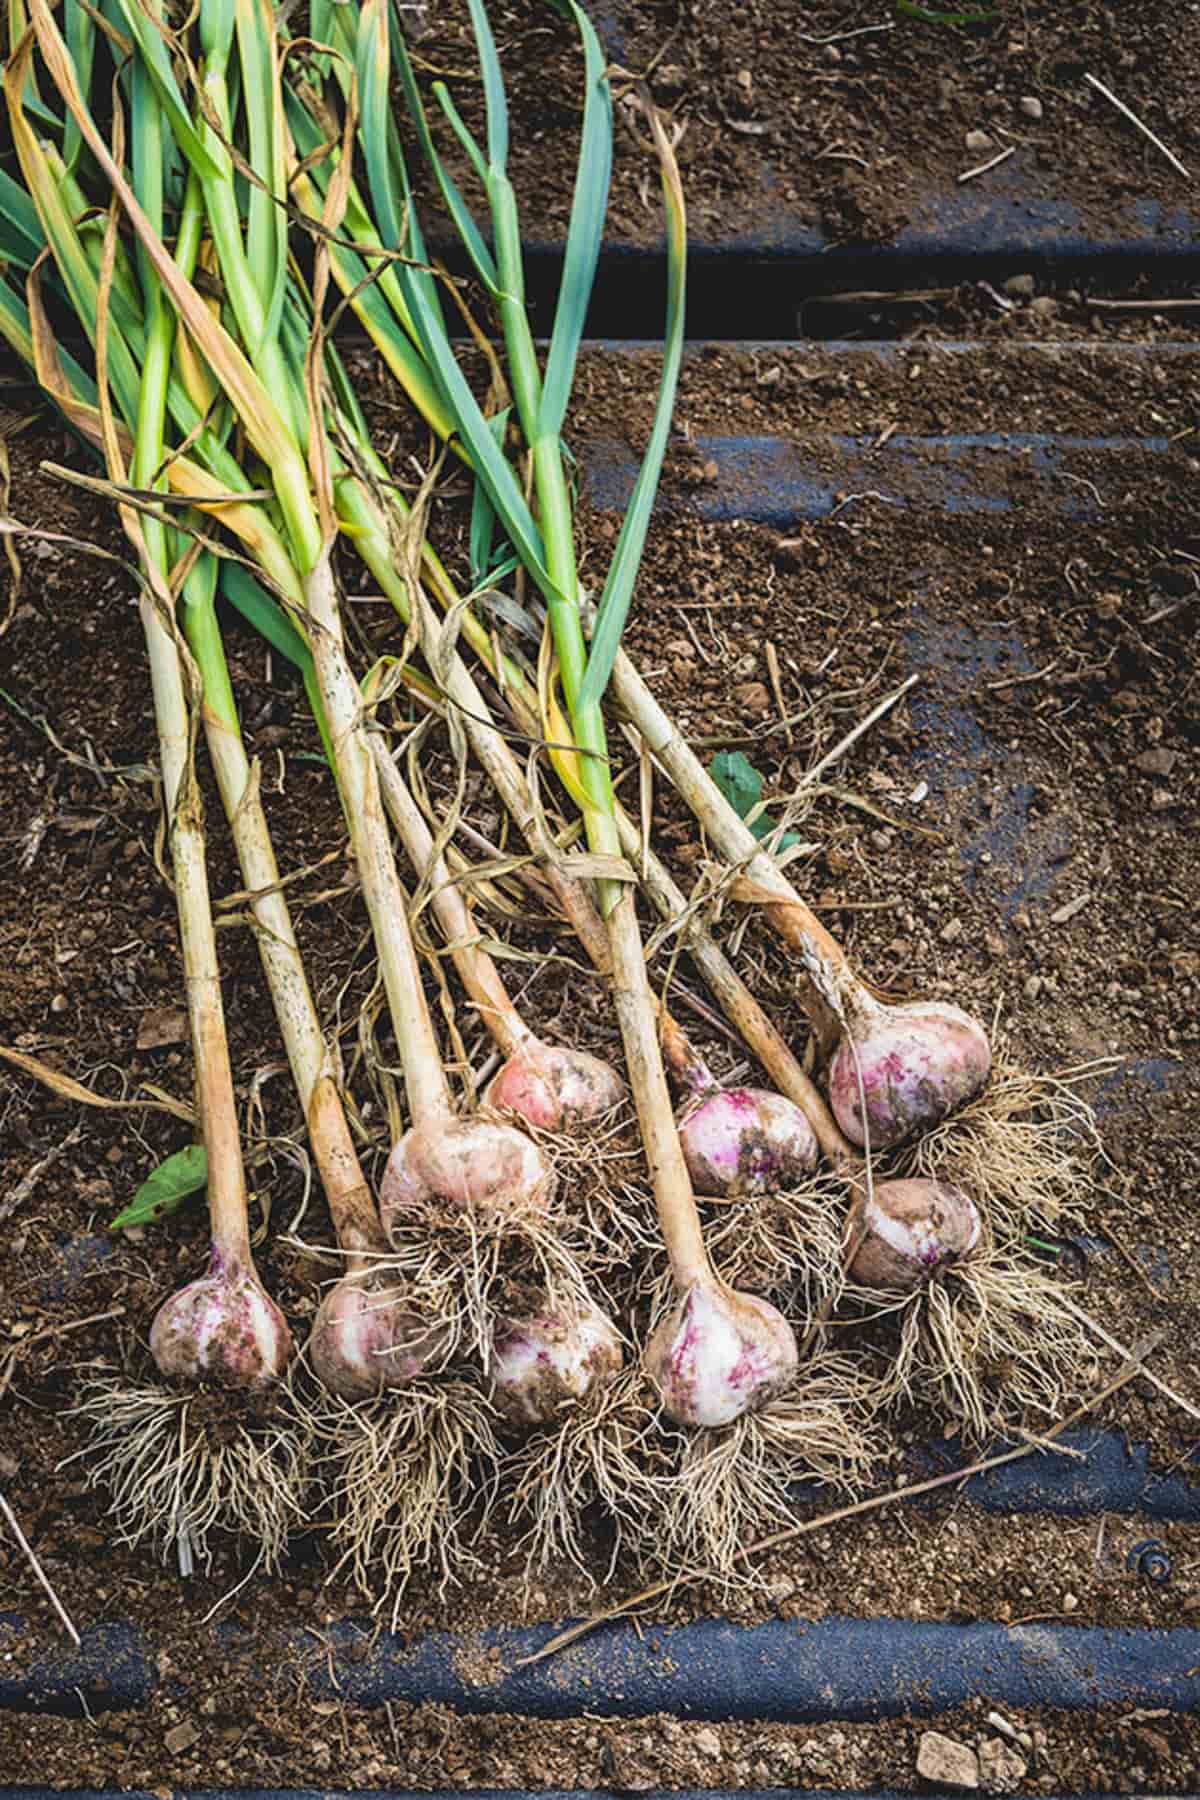 garlic after harvest